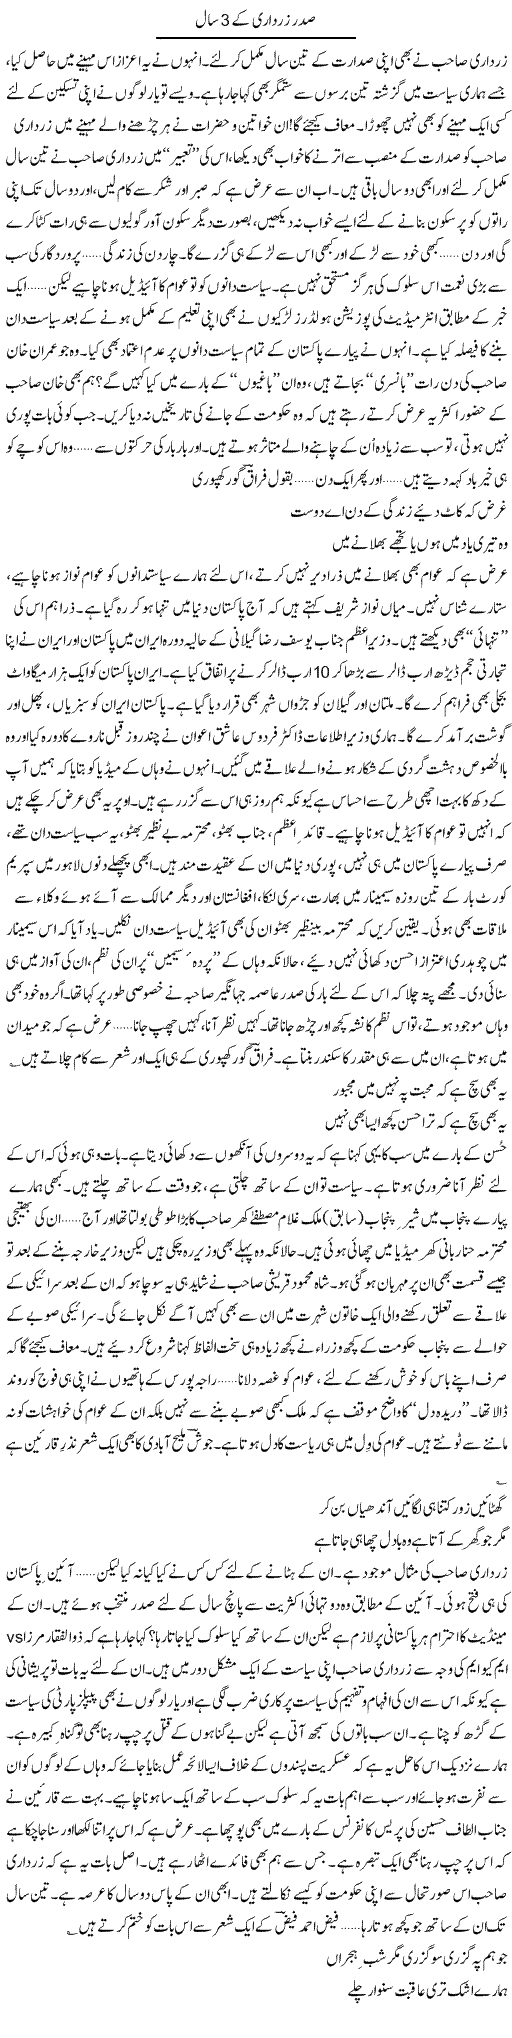 3 Years of Zardari Express Column Ijaz Abdul Hafeez 22 September 2011